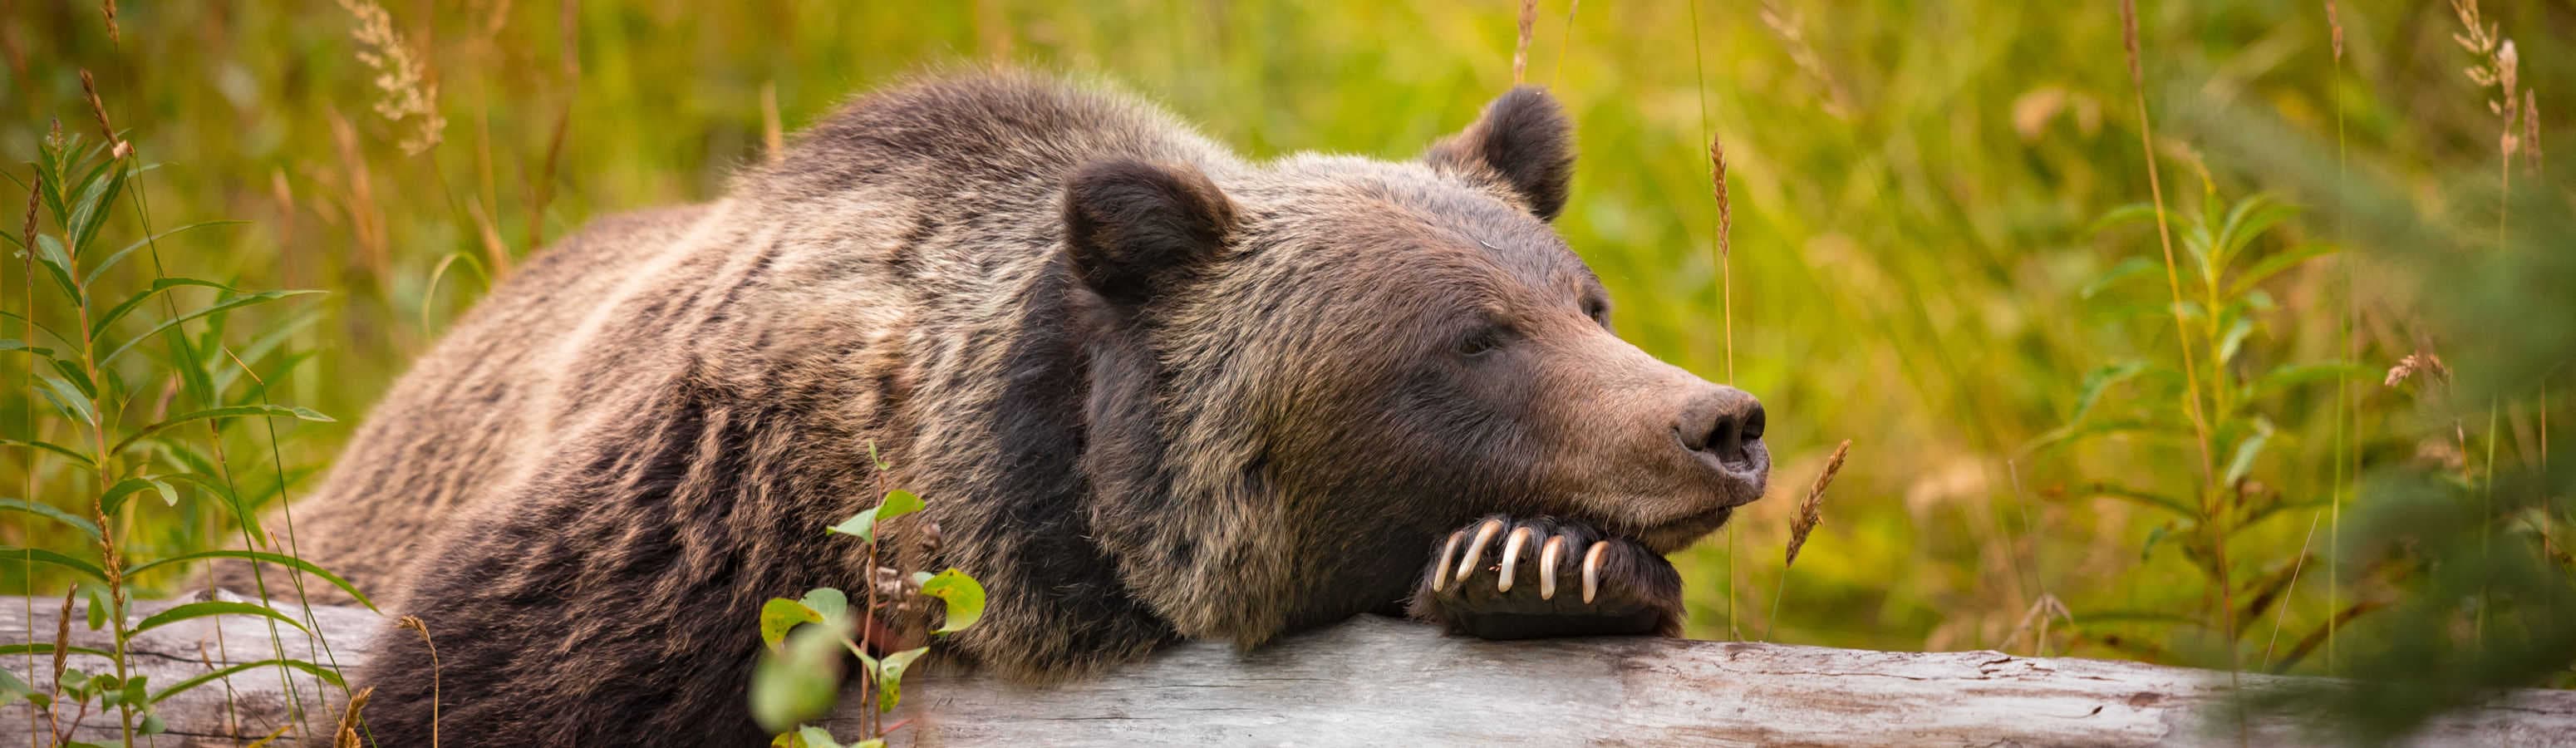 Несколько советов о том, как избежать встречи с медведем